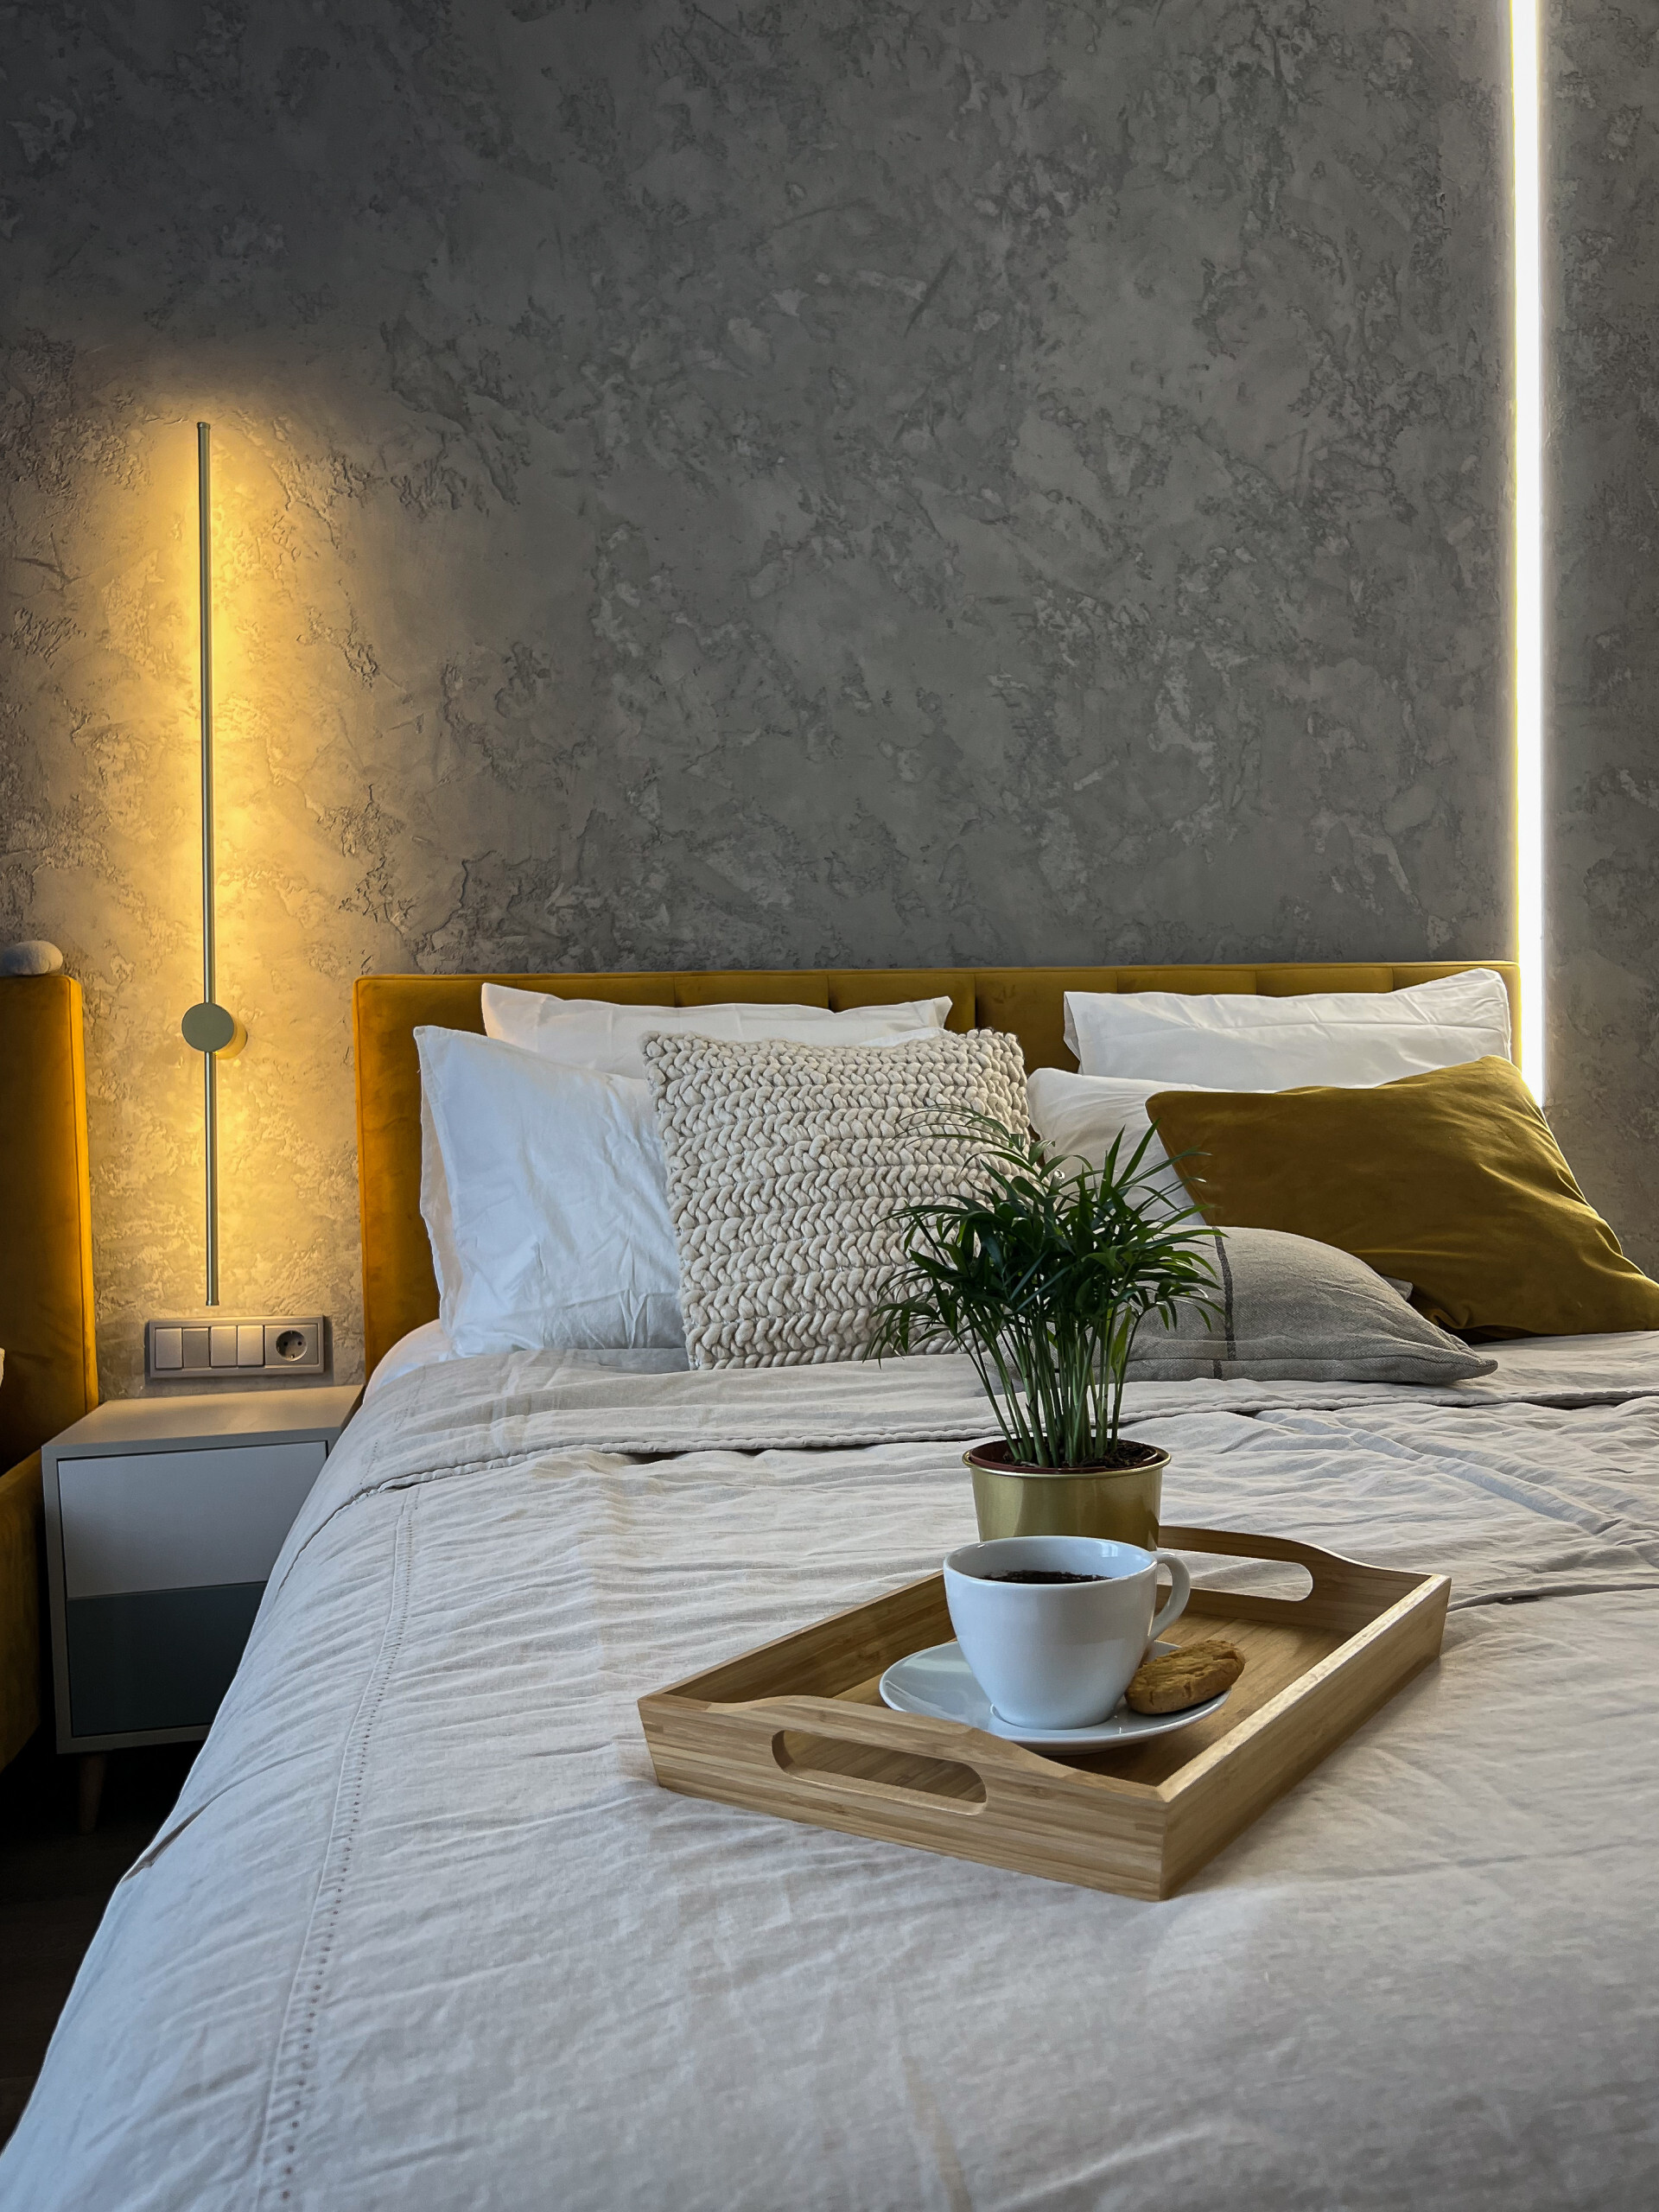 Интерьер спальни cветовыми линиями, рейками с подсветкой, подсветкой настенной, подсветкой светодиодной, светильниками над кроватью и с подсветкой в стиле лофт